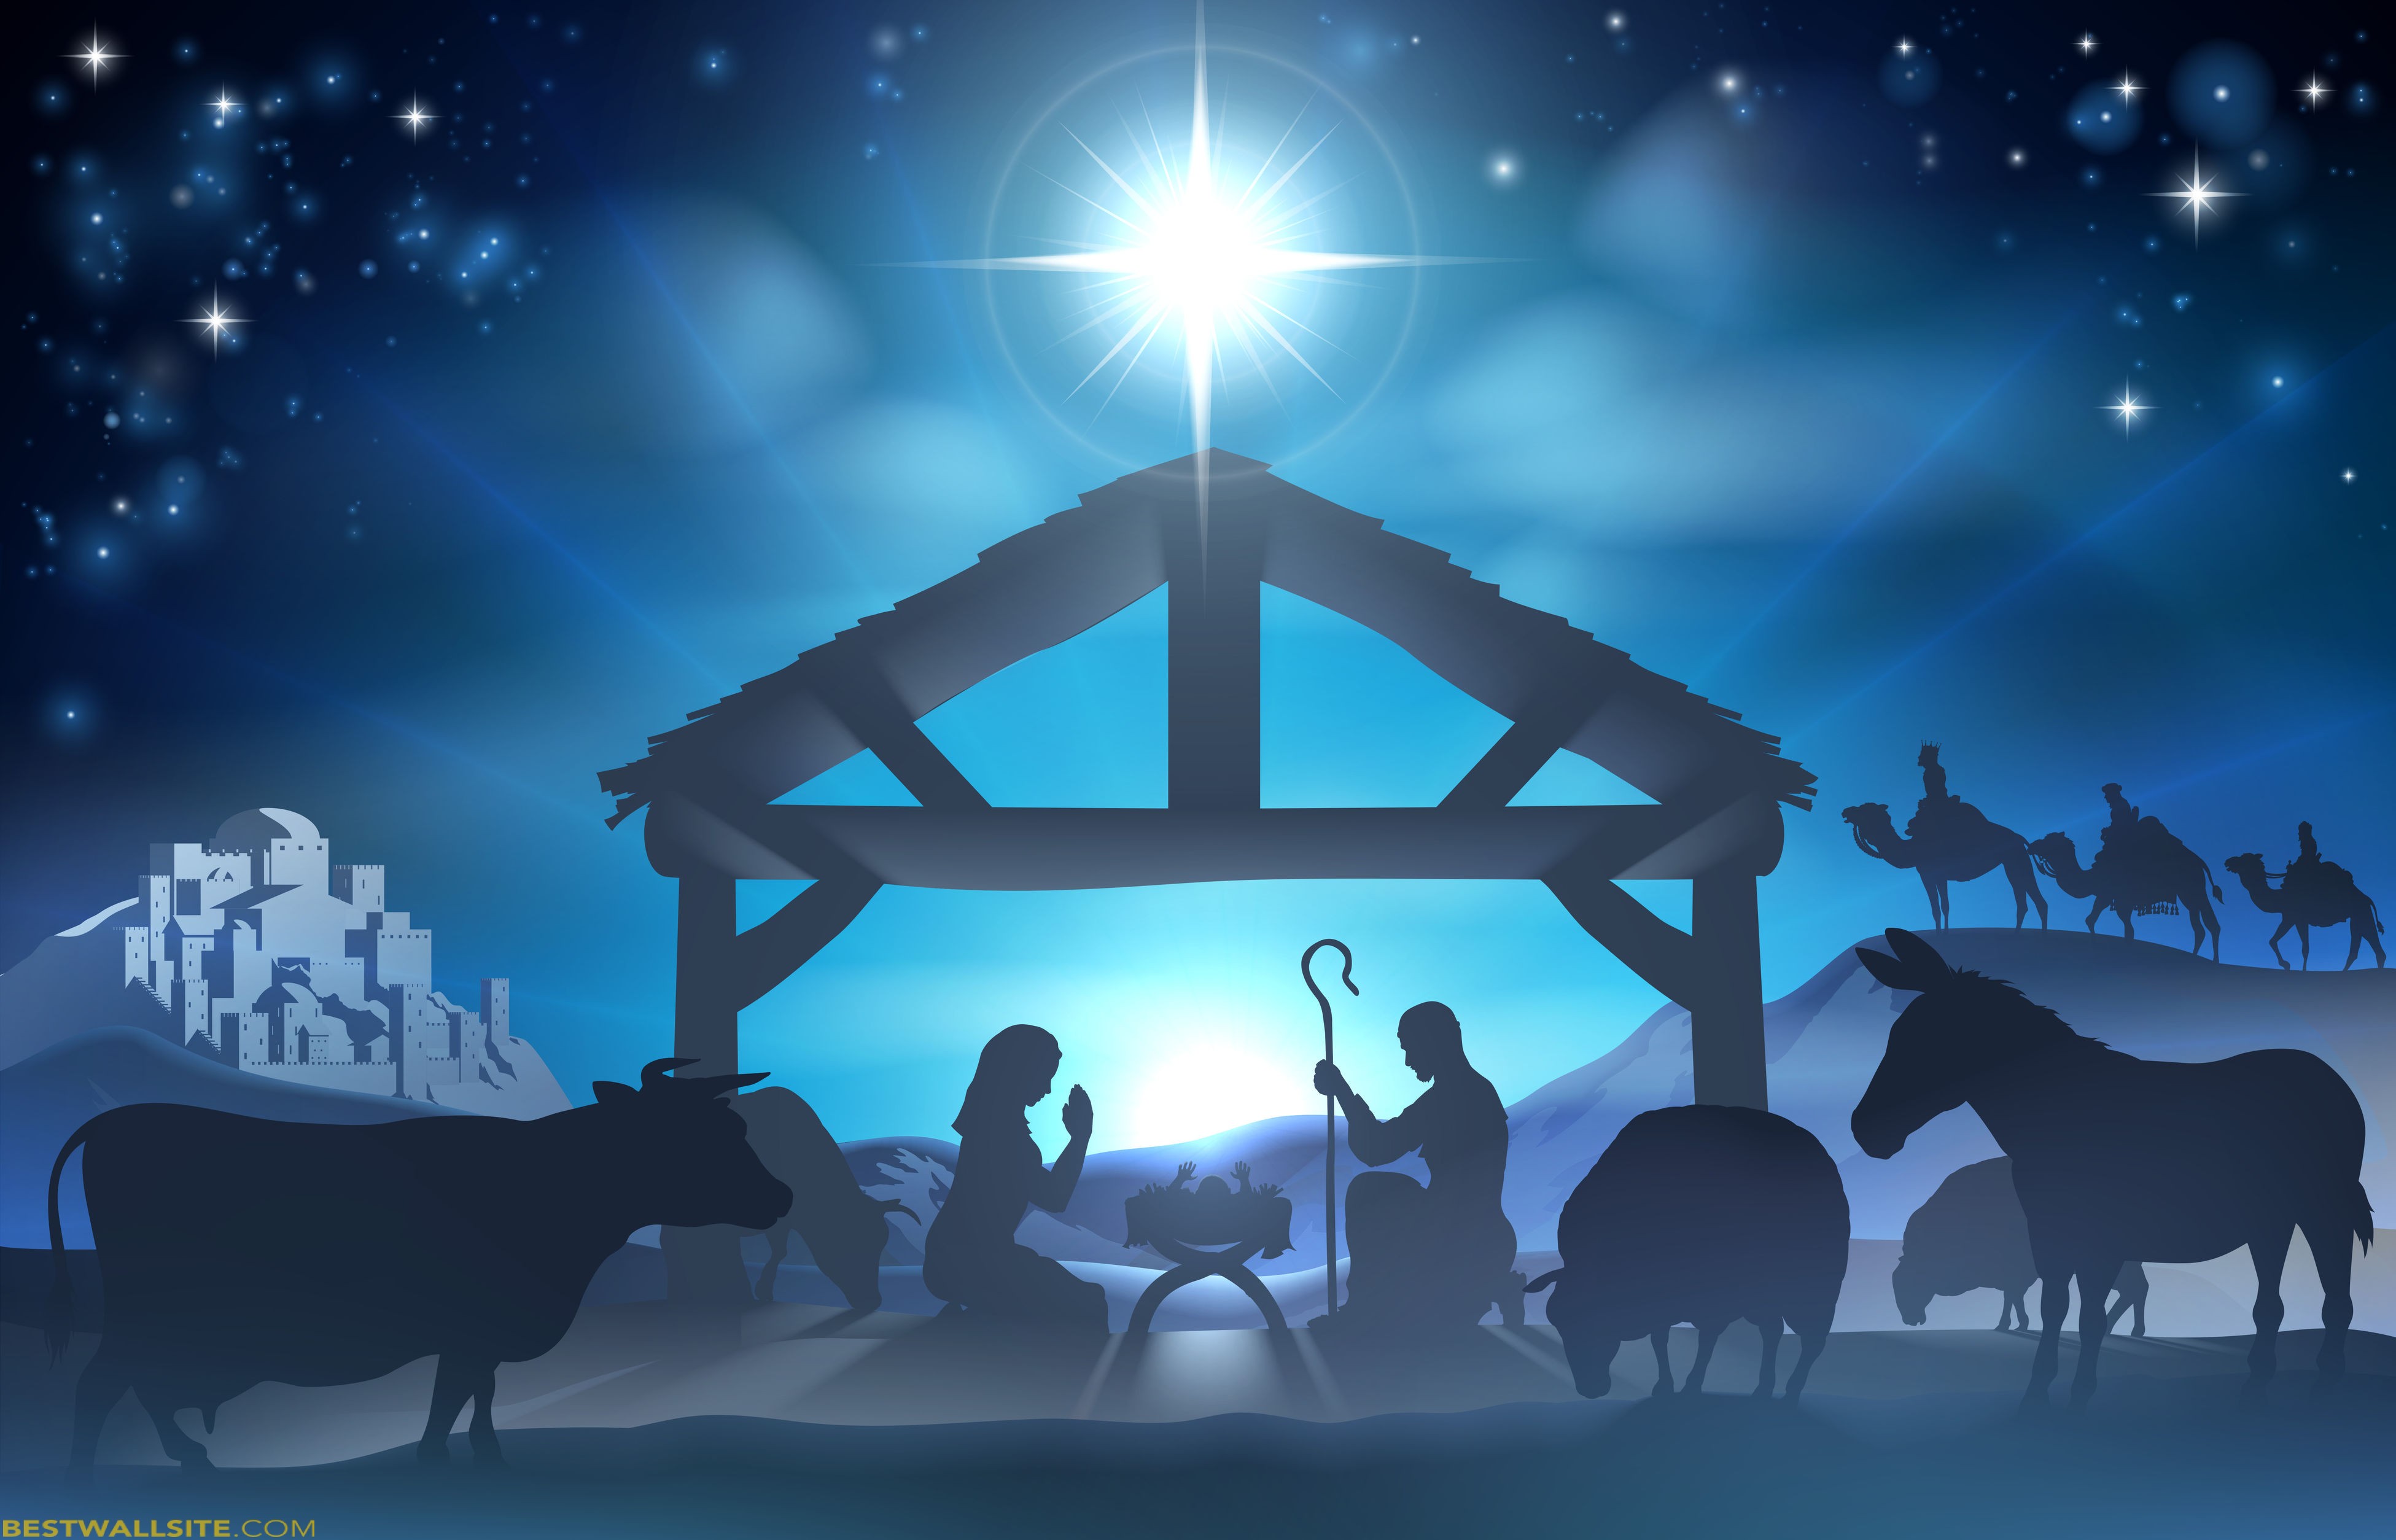 Advent Christmas Time Nativity Scene Bestwallsite